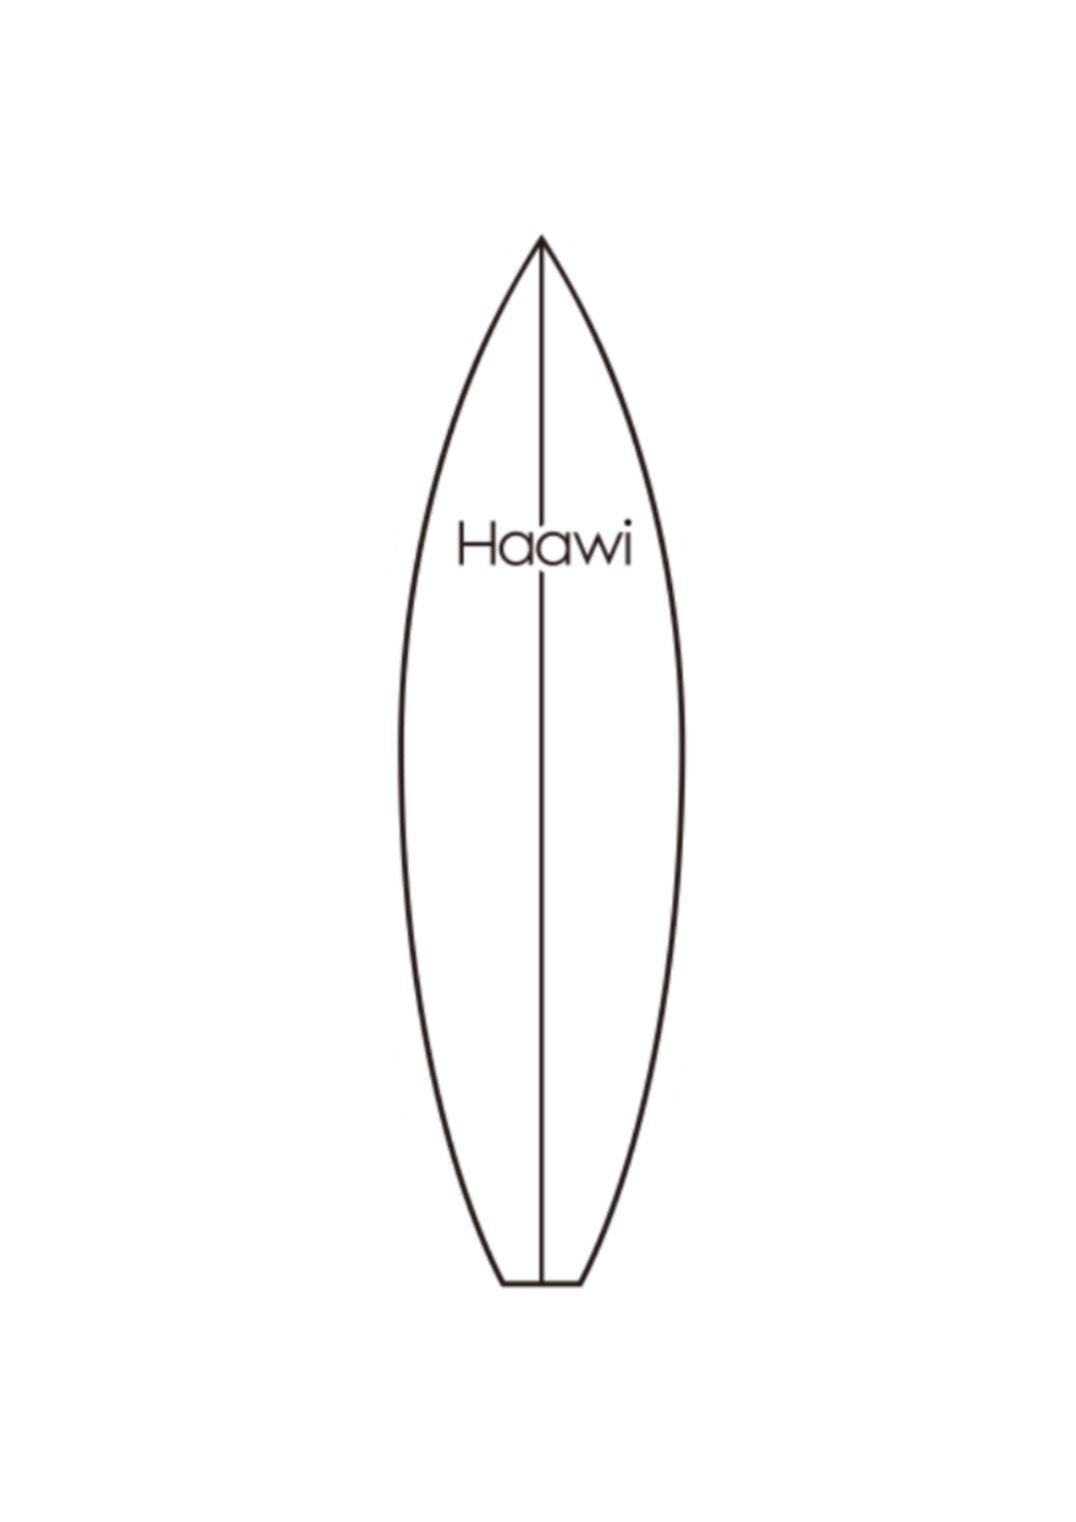 Surf board sticker